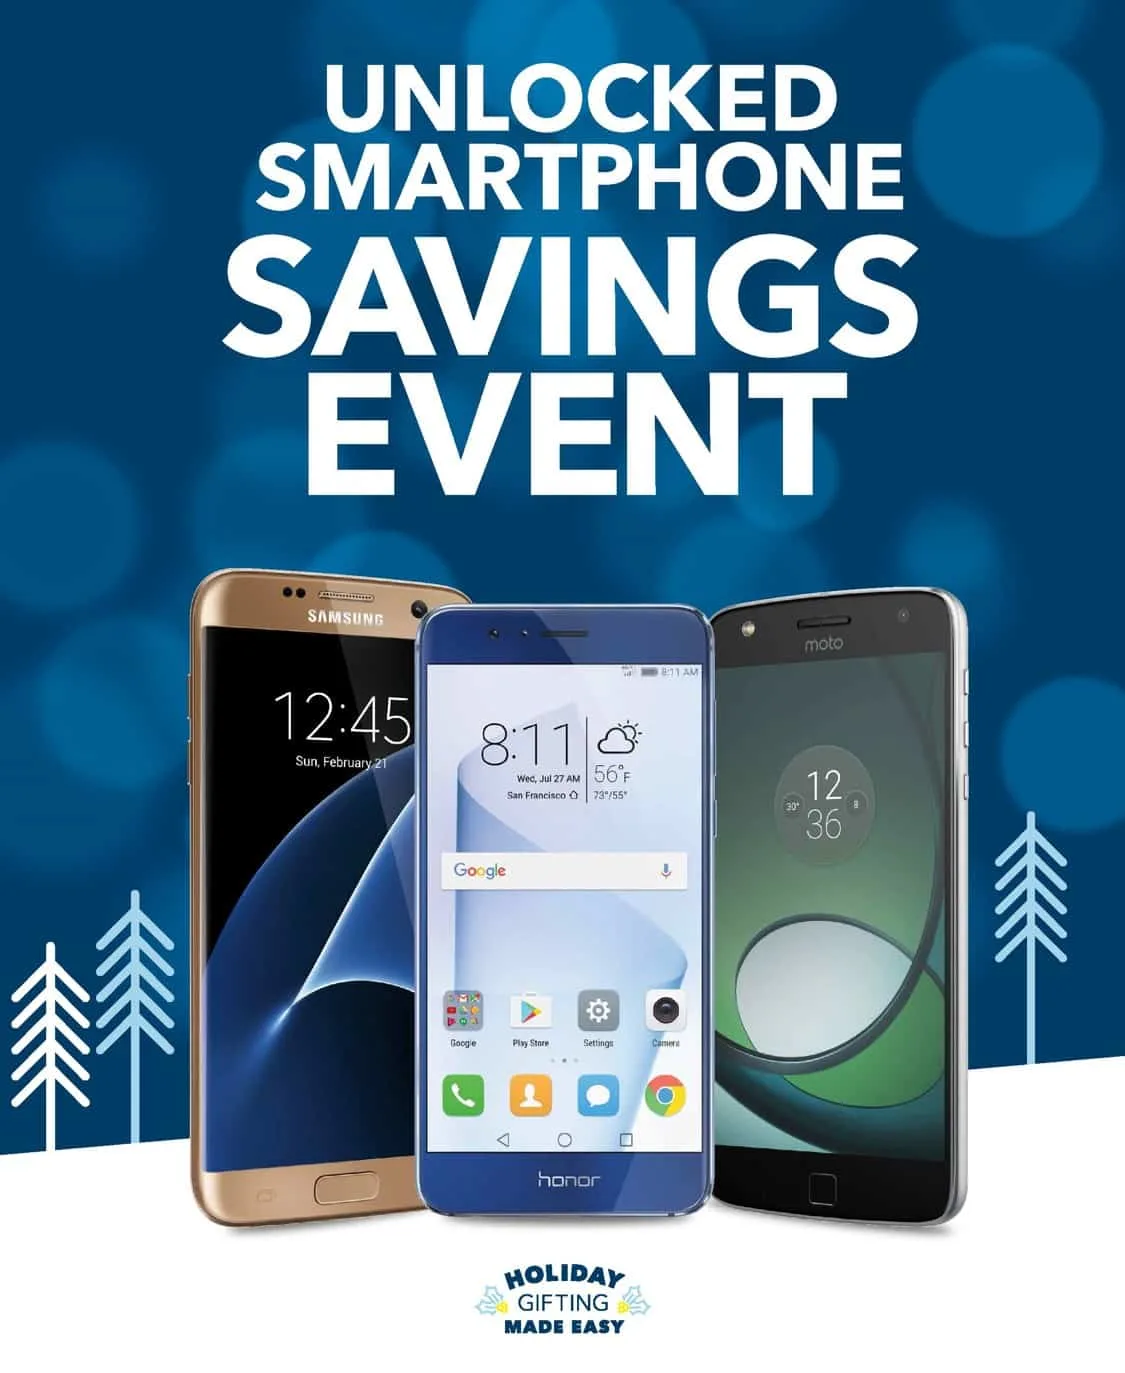 Best Buy Unlocked Smartphone Savings Event! @BestBuy #bbyunlocked